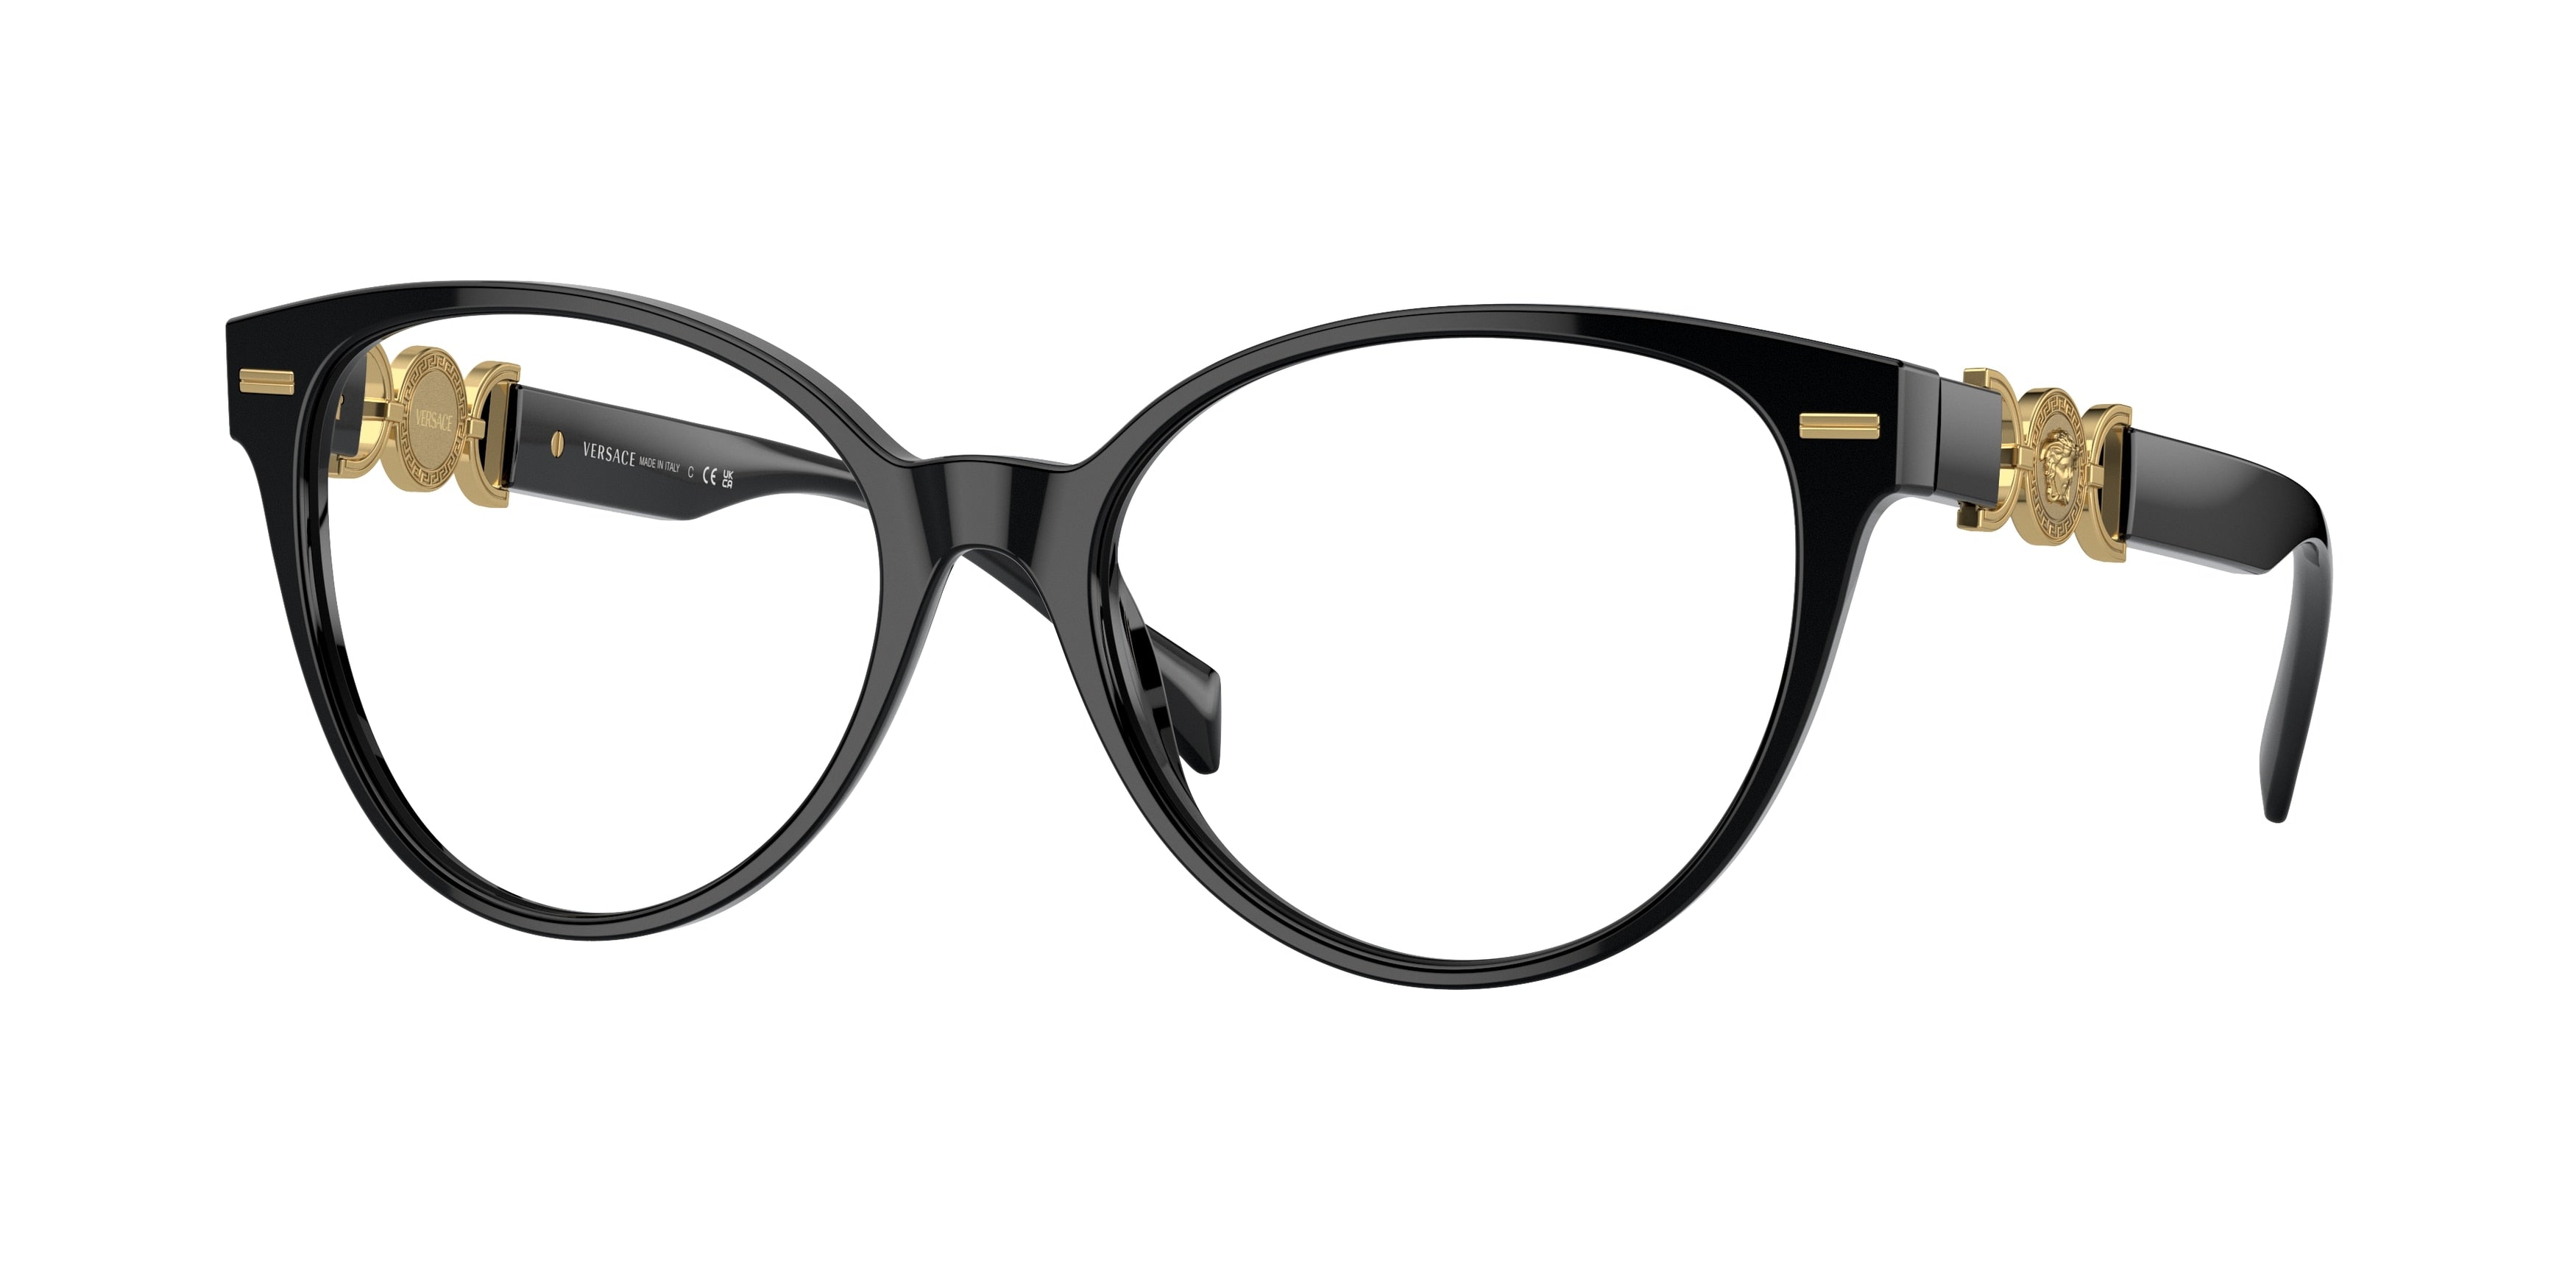 Versace VE3334 Cat Eye Eyeglasses  GB1-Black 55-140-17 - Color Map Black